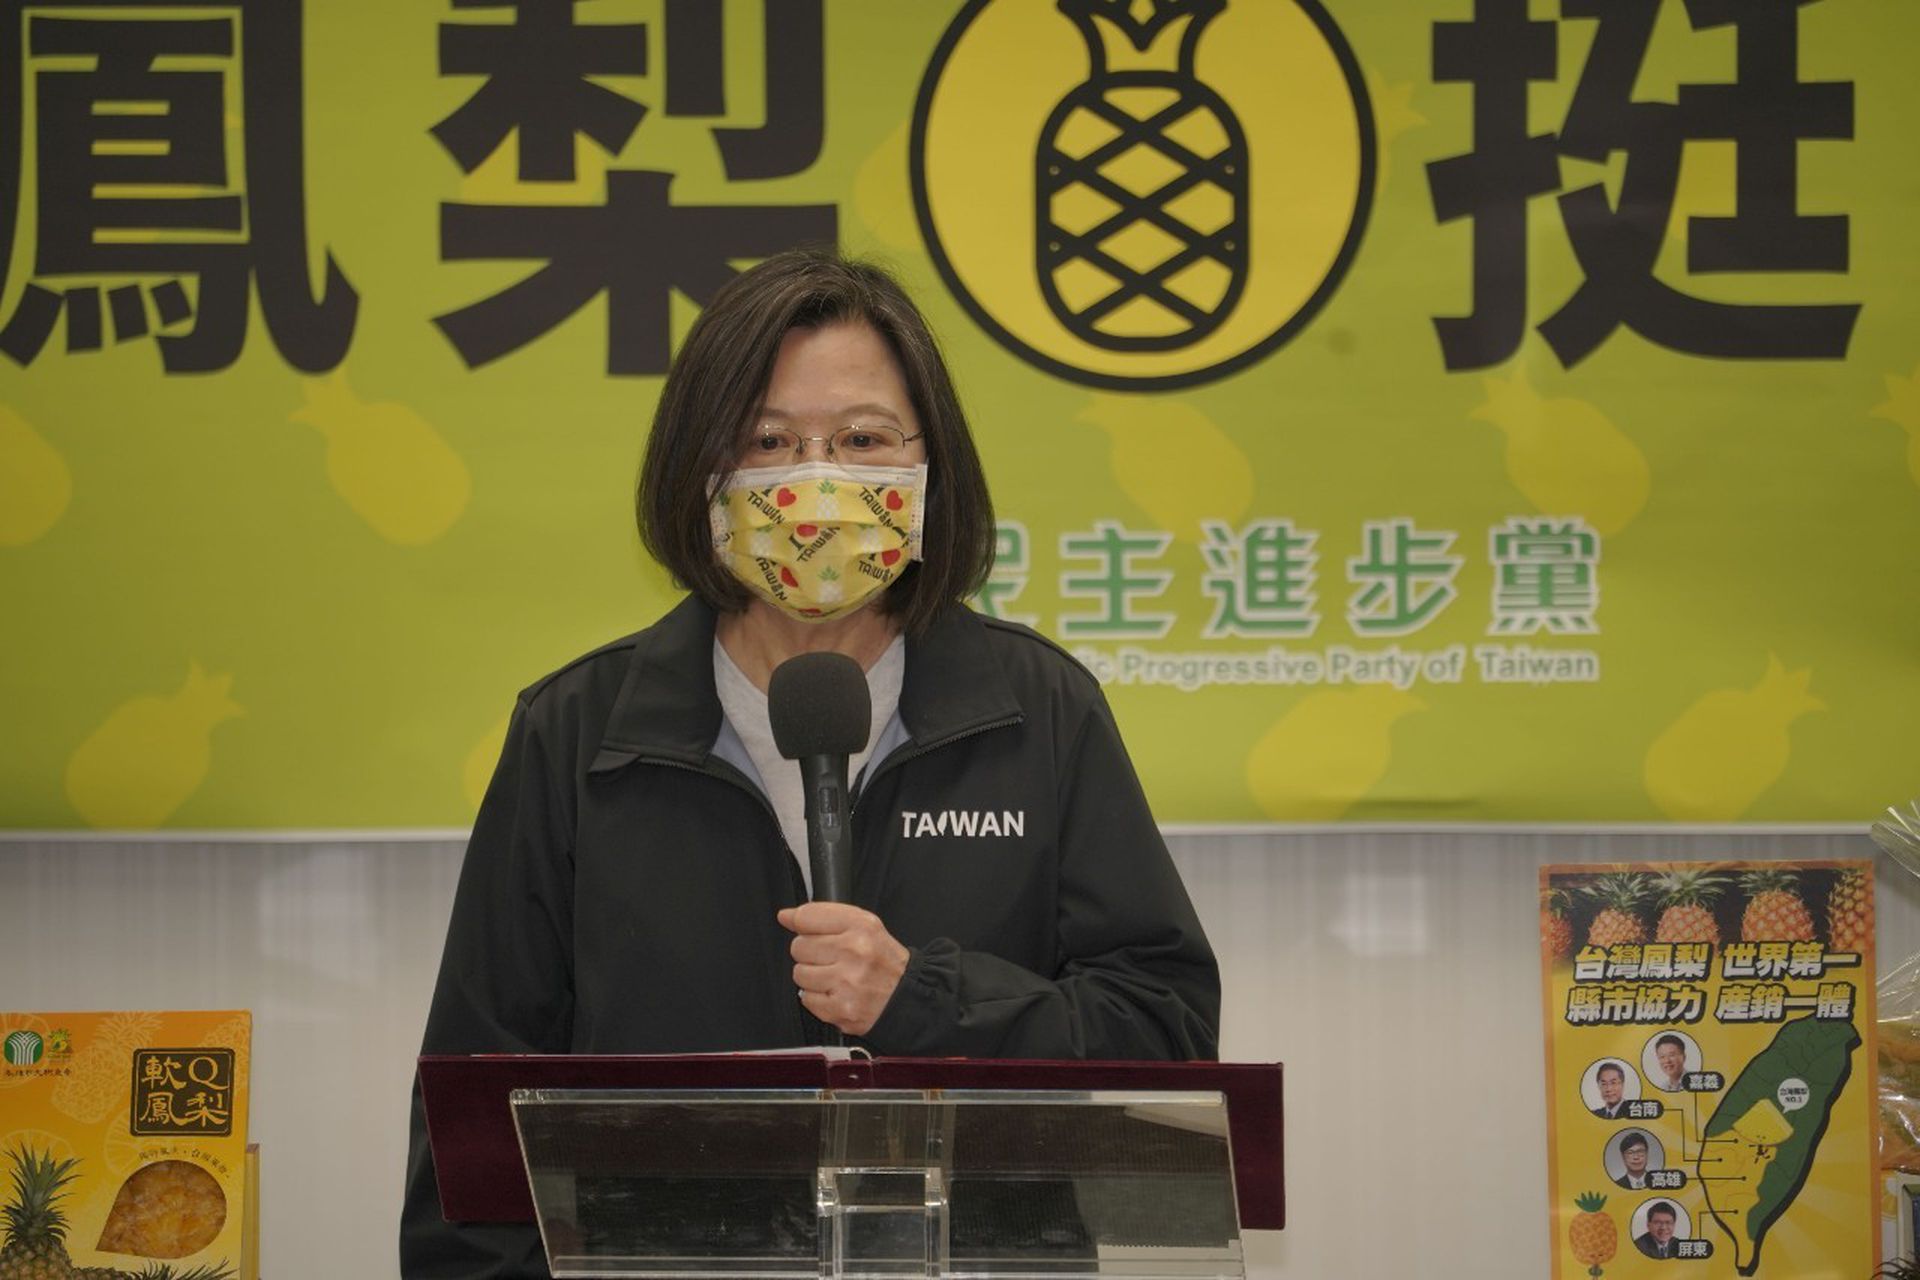 陆禁台菠萝蔡英文 在挑战中壮大台湾 多维新闻 台湾